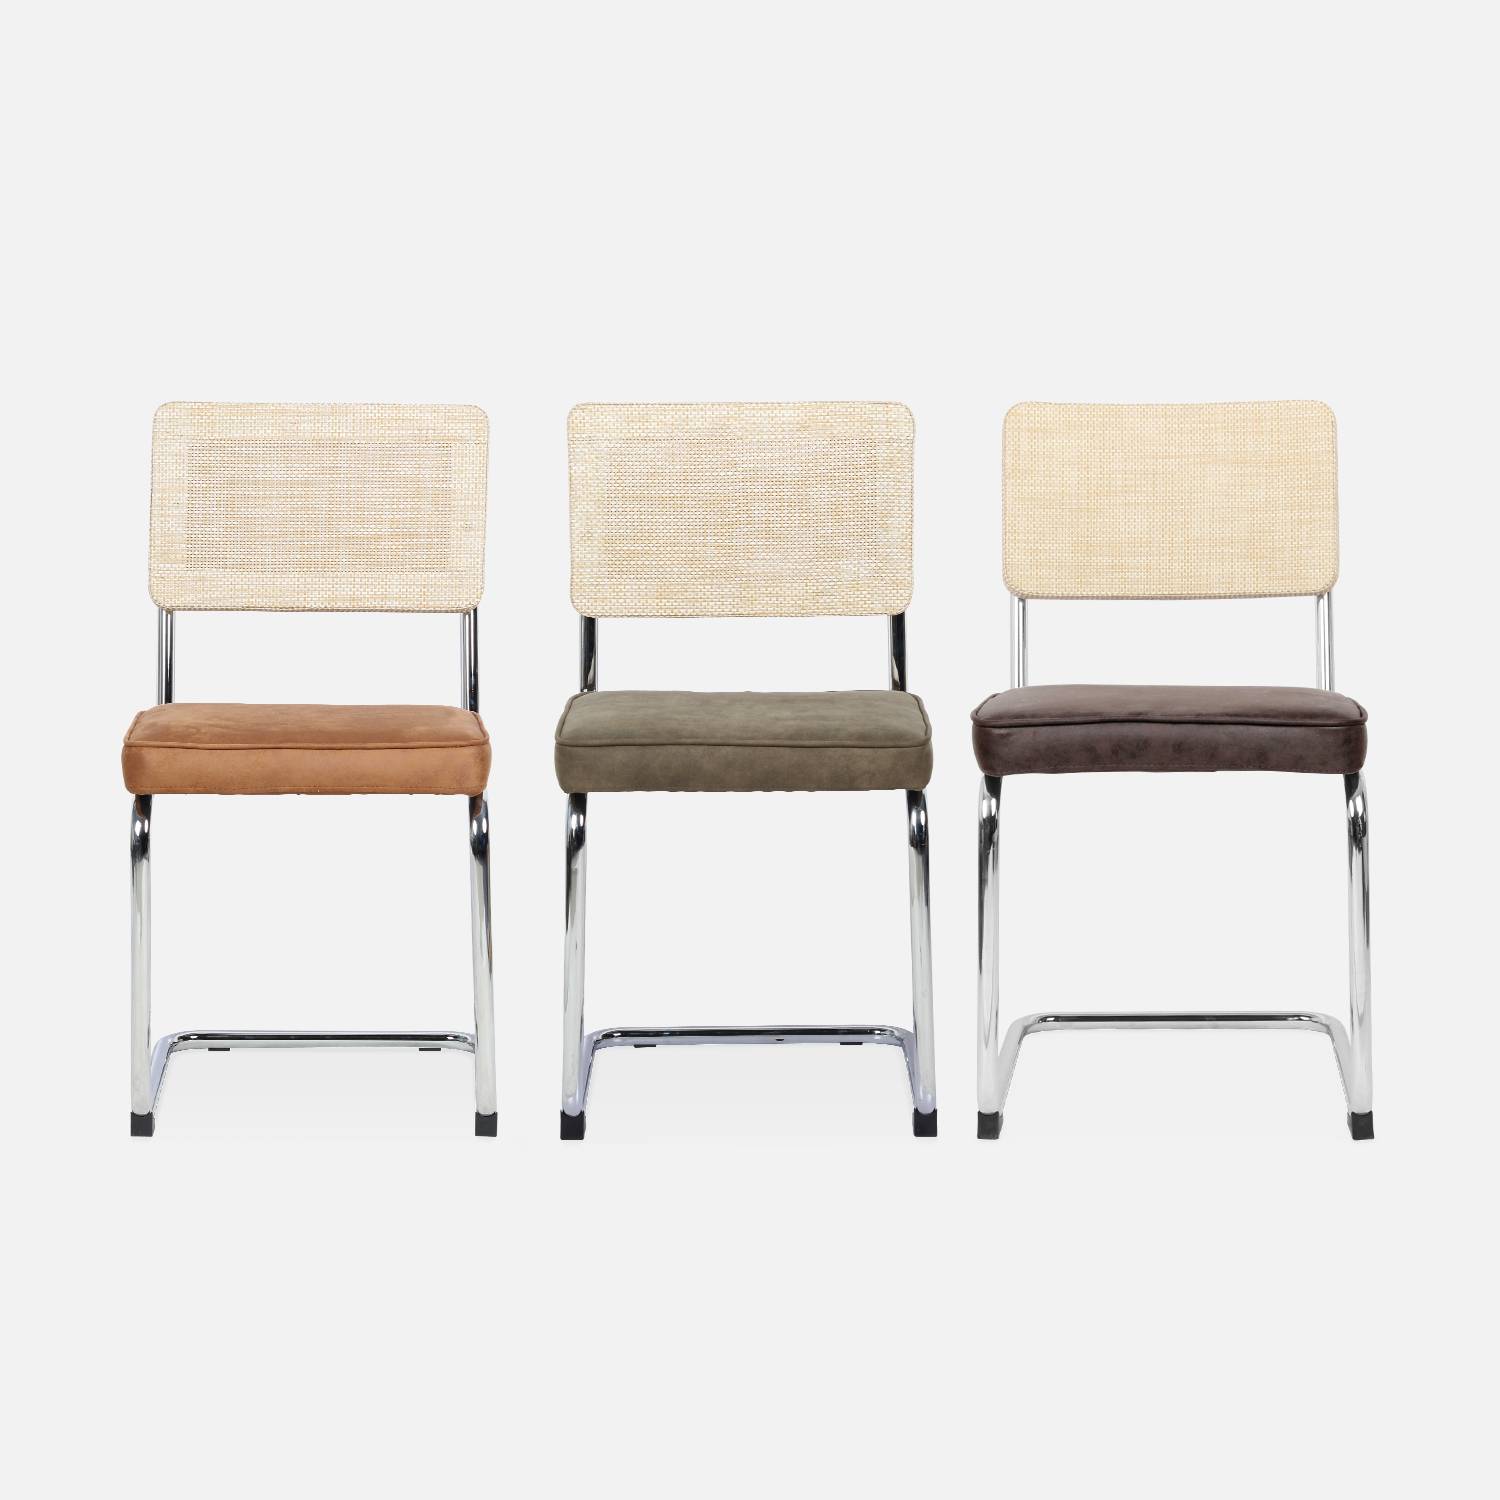 2 chaises cantilever - Maja - tissu marron et résine, 46 x 54,5 x 84,5cm   Photo8